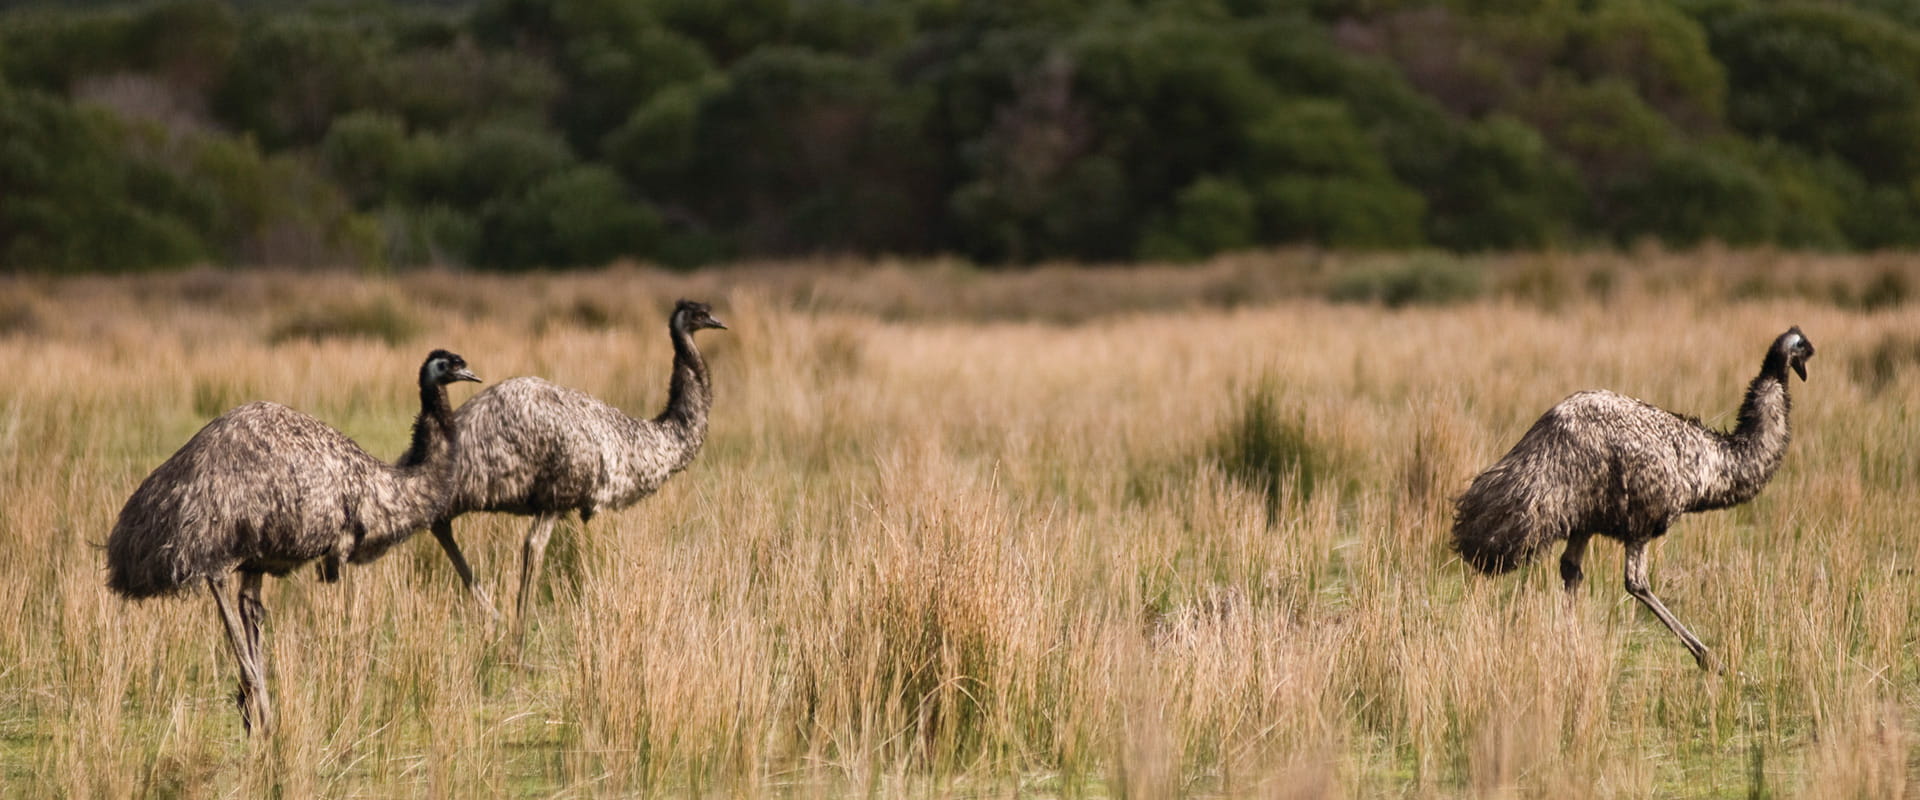 Three emus walk through grassland